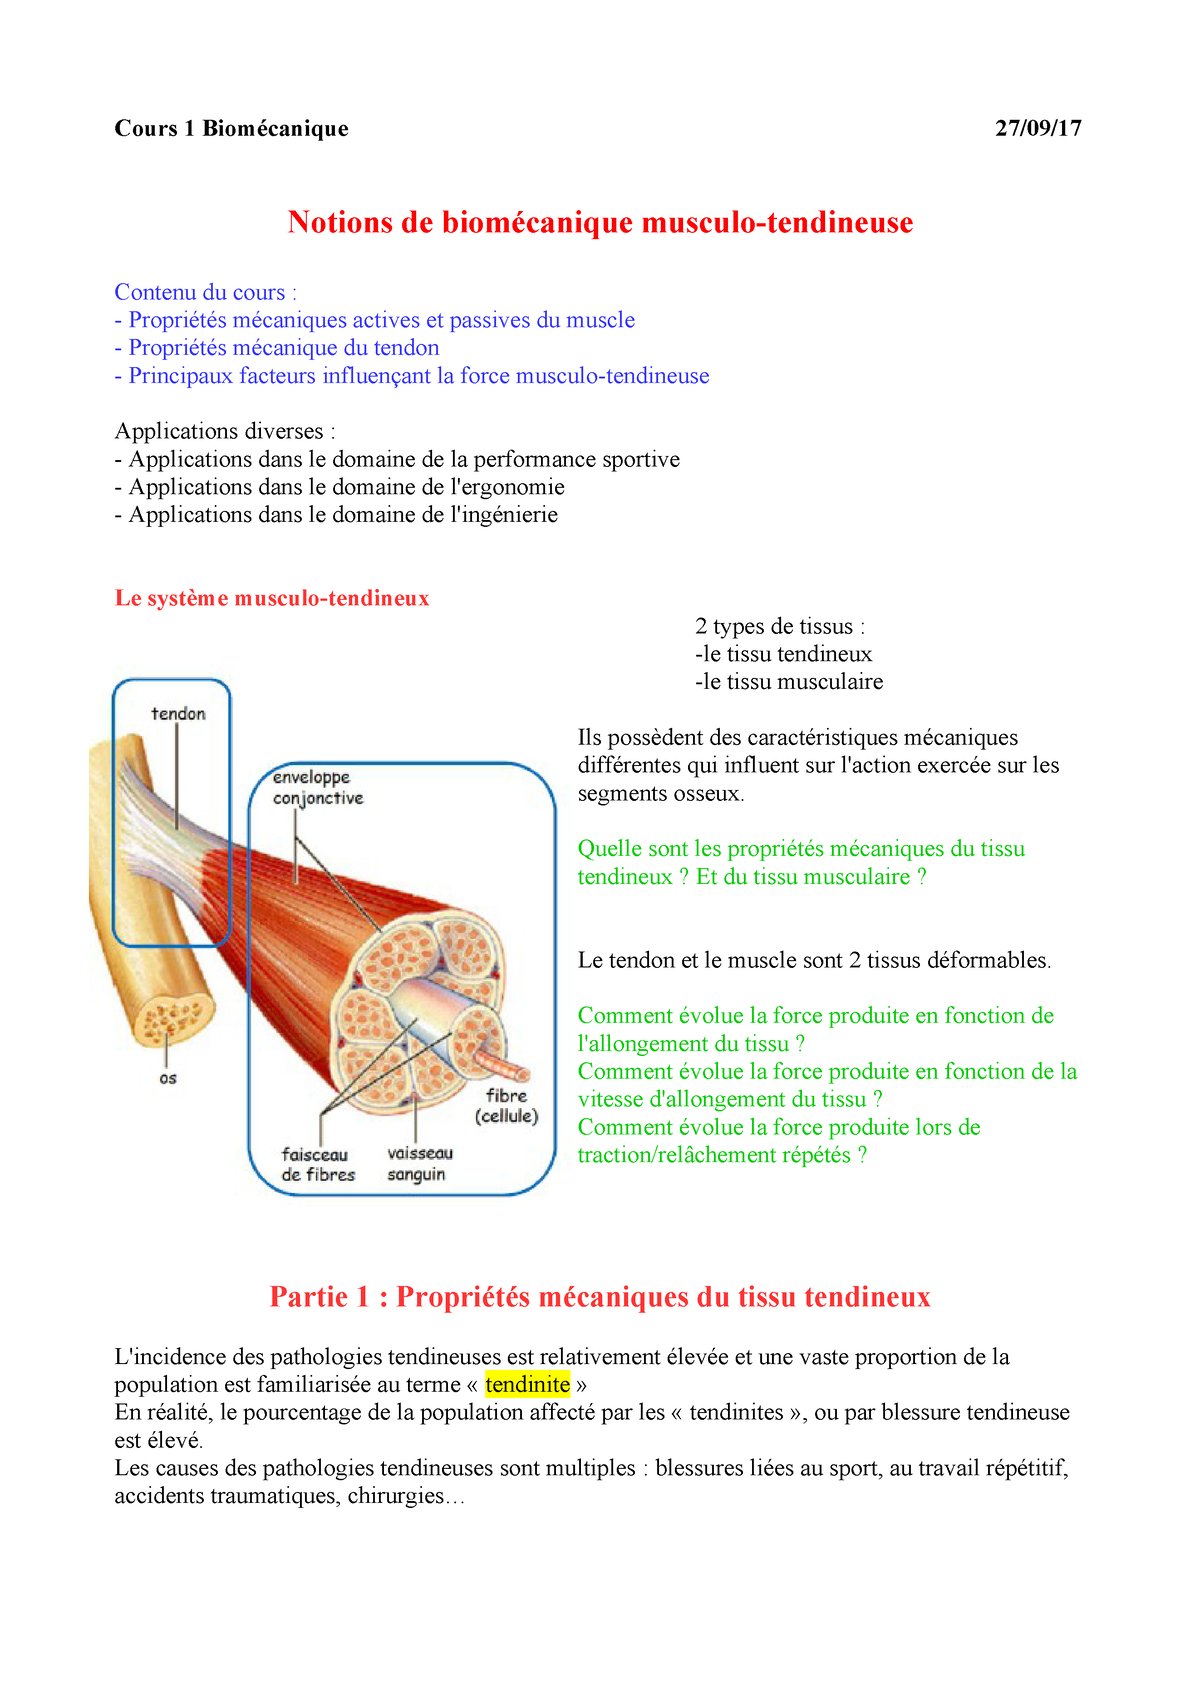 Structures du pied et leurs rôles - biomécanique simplifée